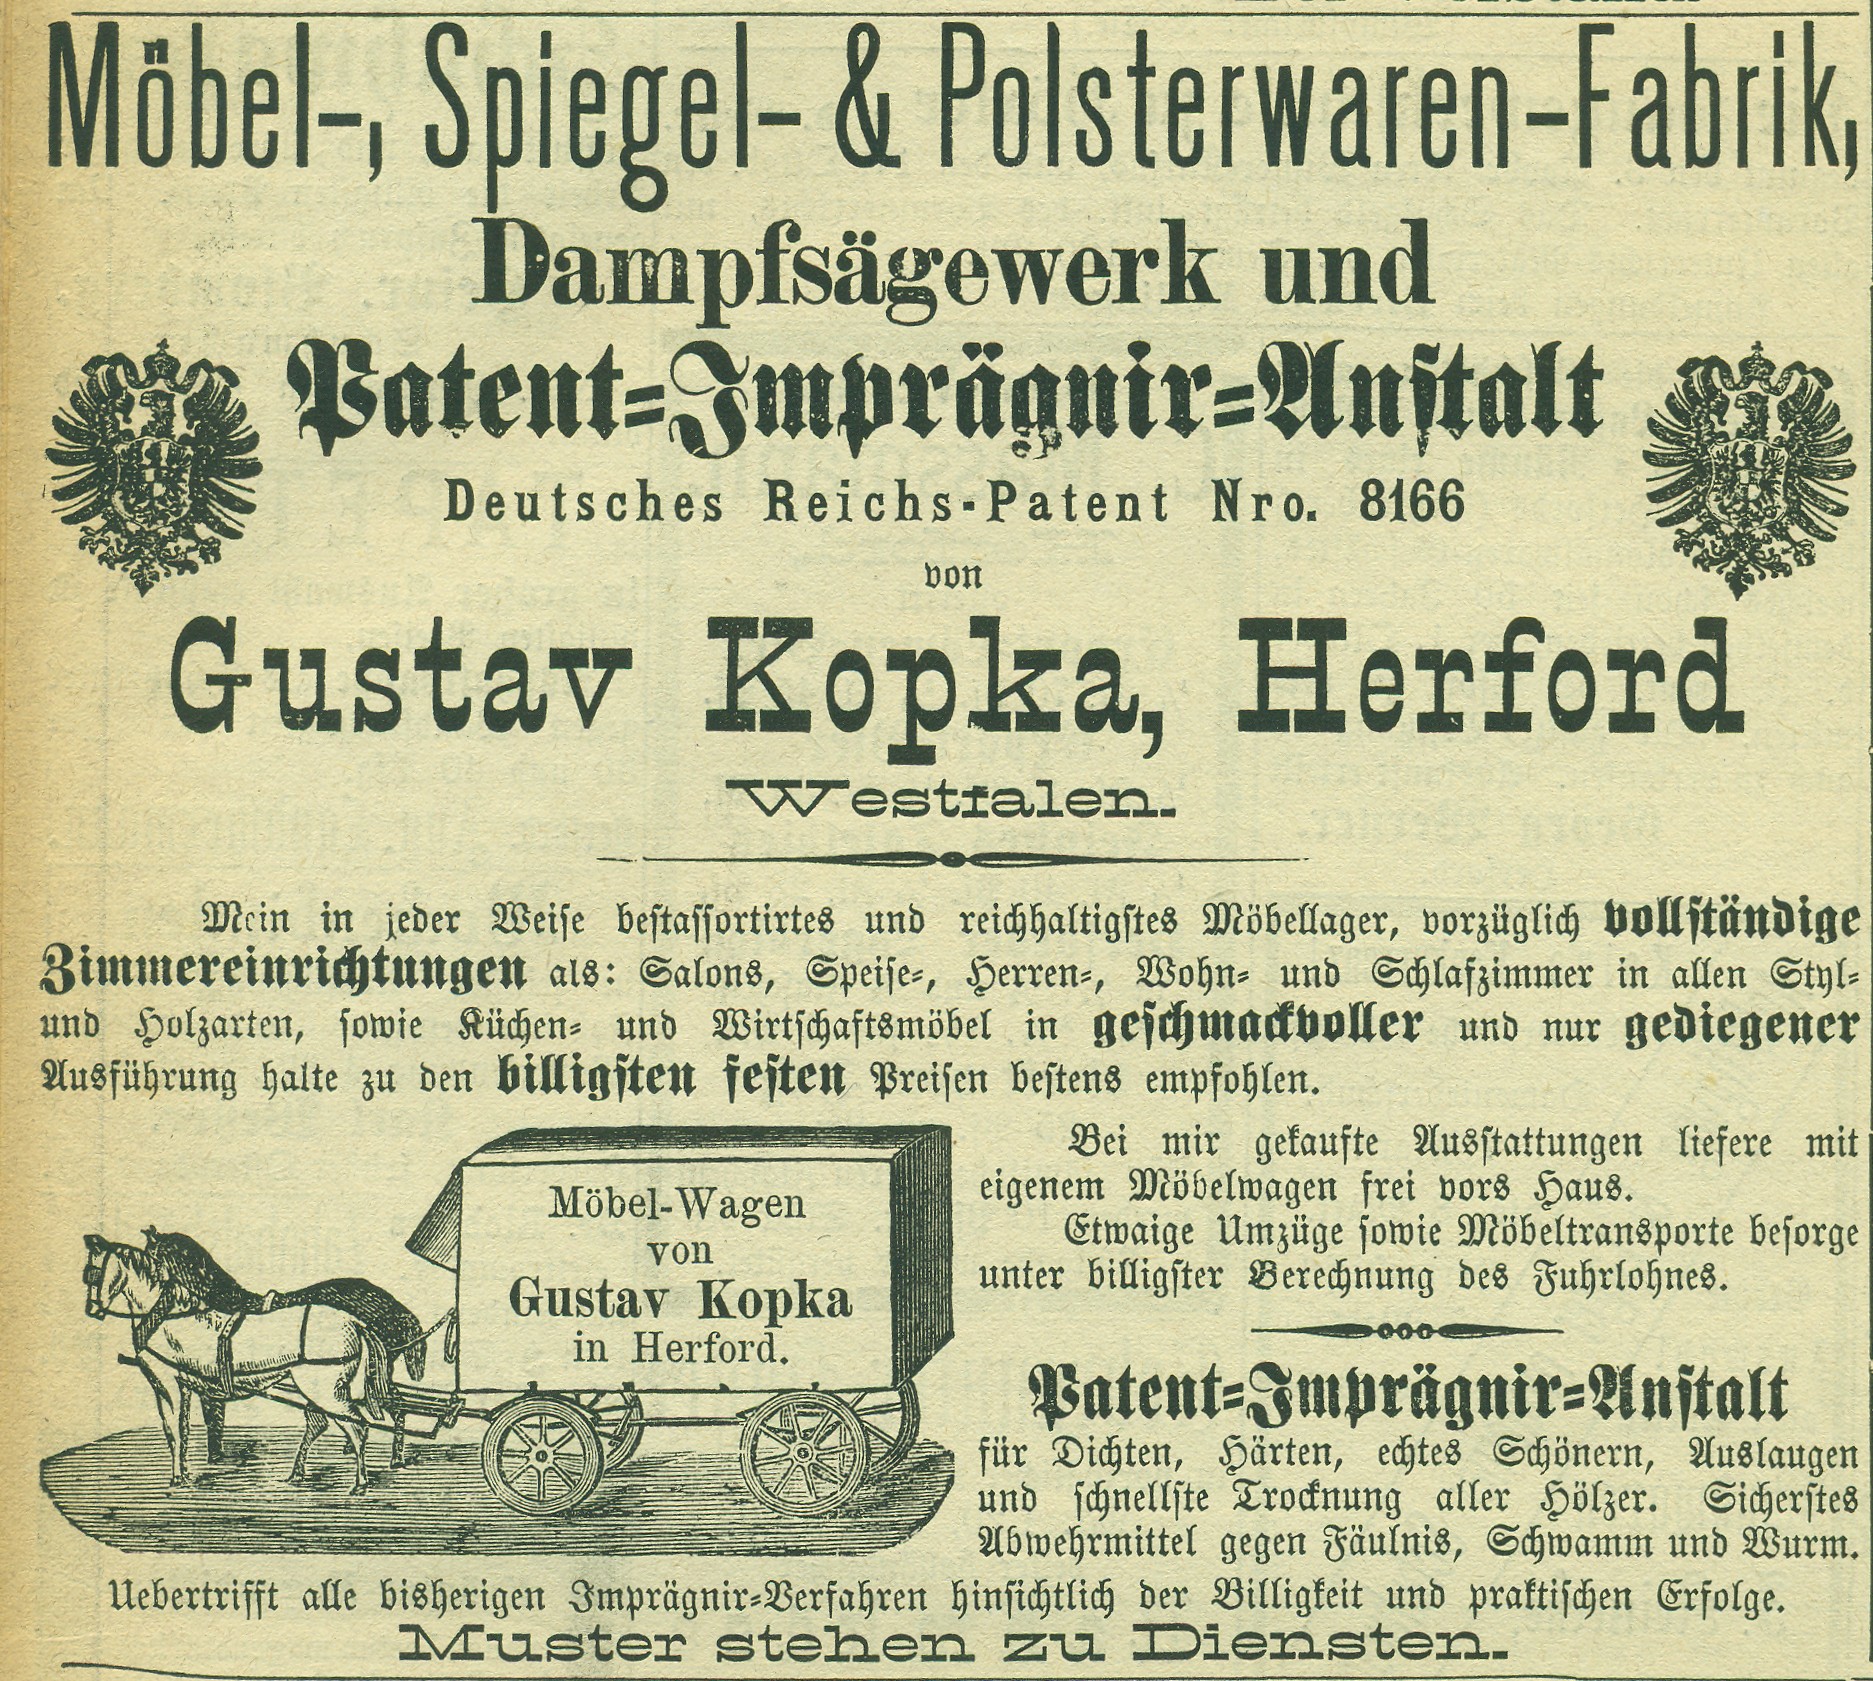 Werbeanzeige des Möbelfabrikanten Gustav Kopka